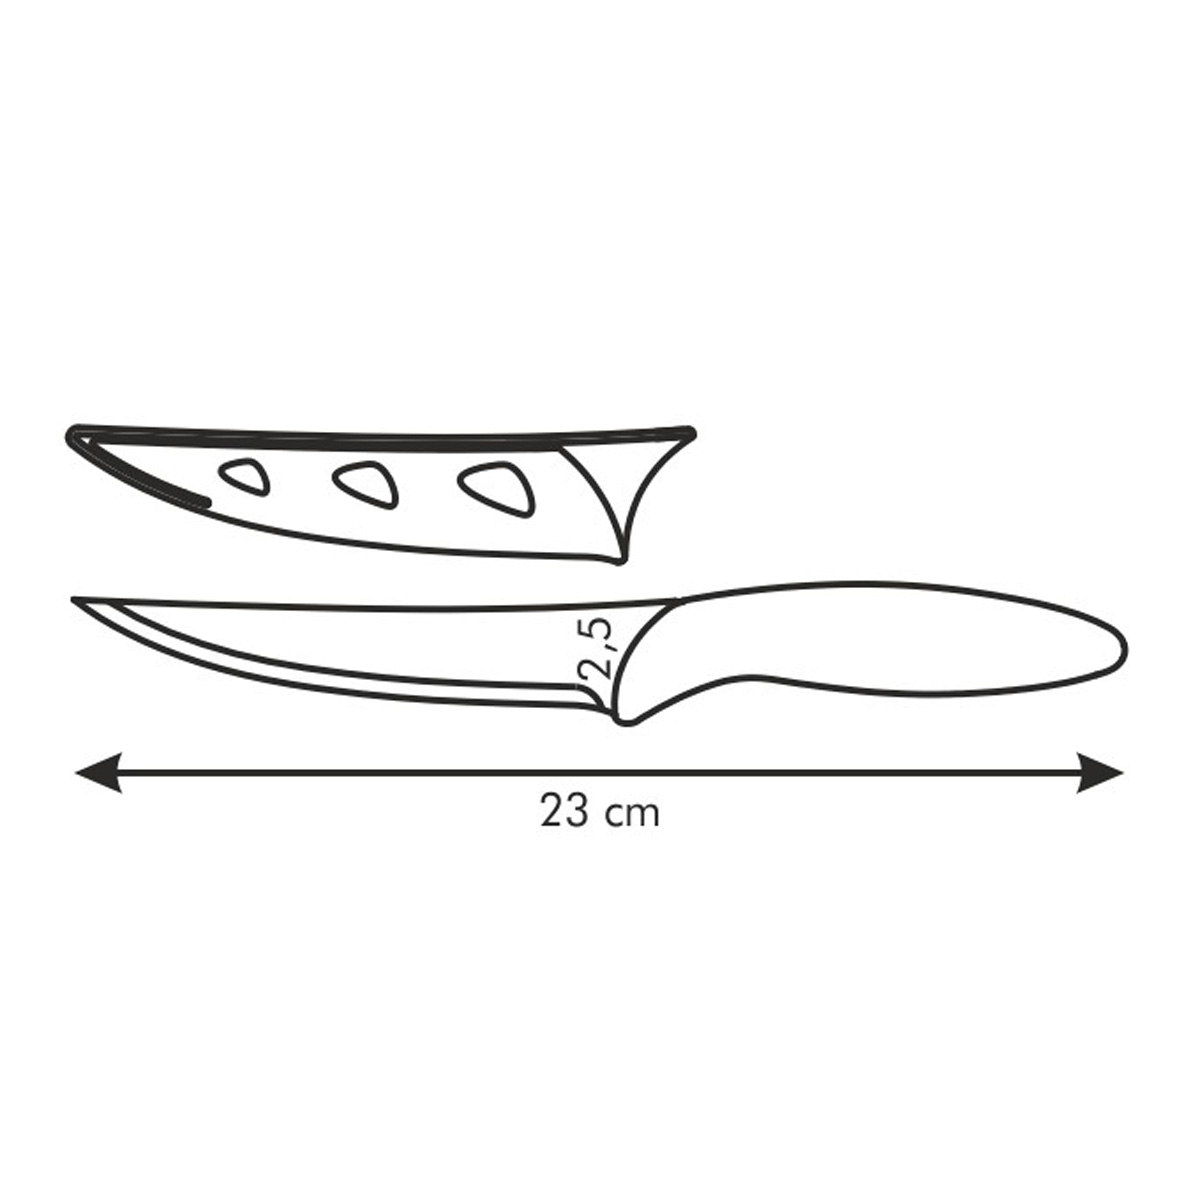 Antiadhézny nôž univerzálny PRESTO TONE 12 cm